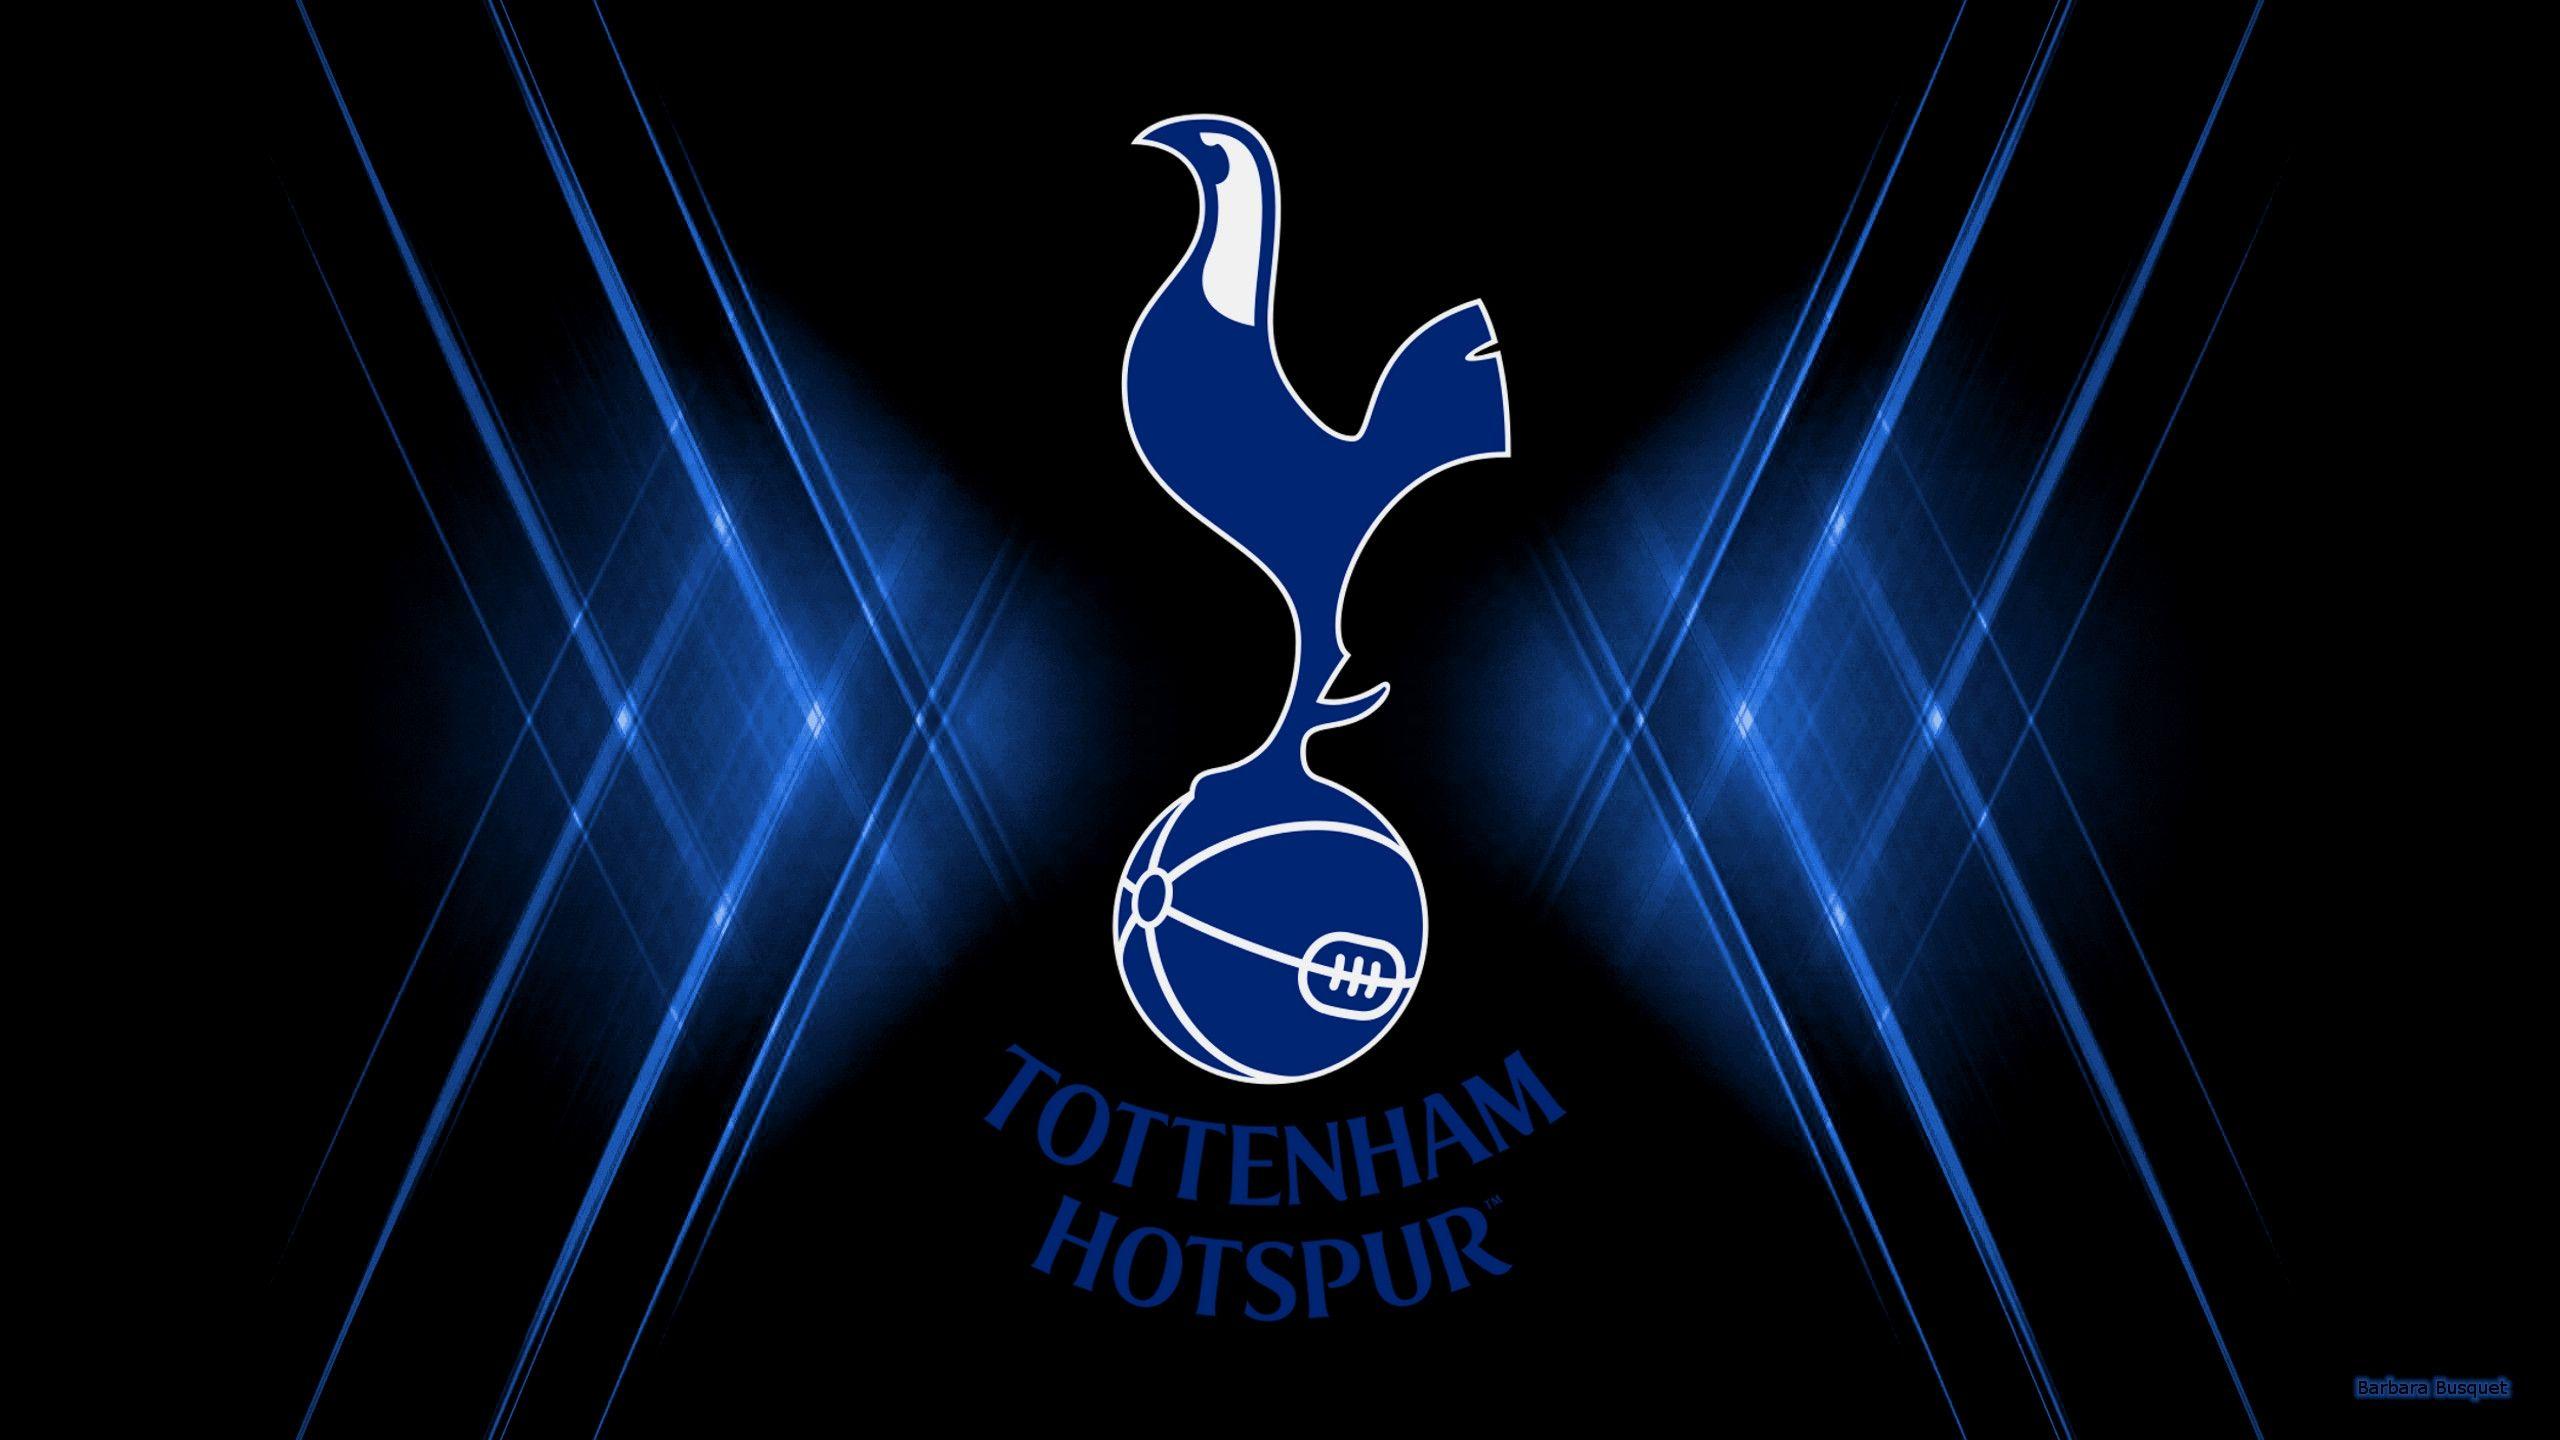 Tottenham Hotspur Logo - Lovely tottenham Hotspur Logo Wallpaper | Great Foofball Club